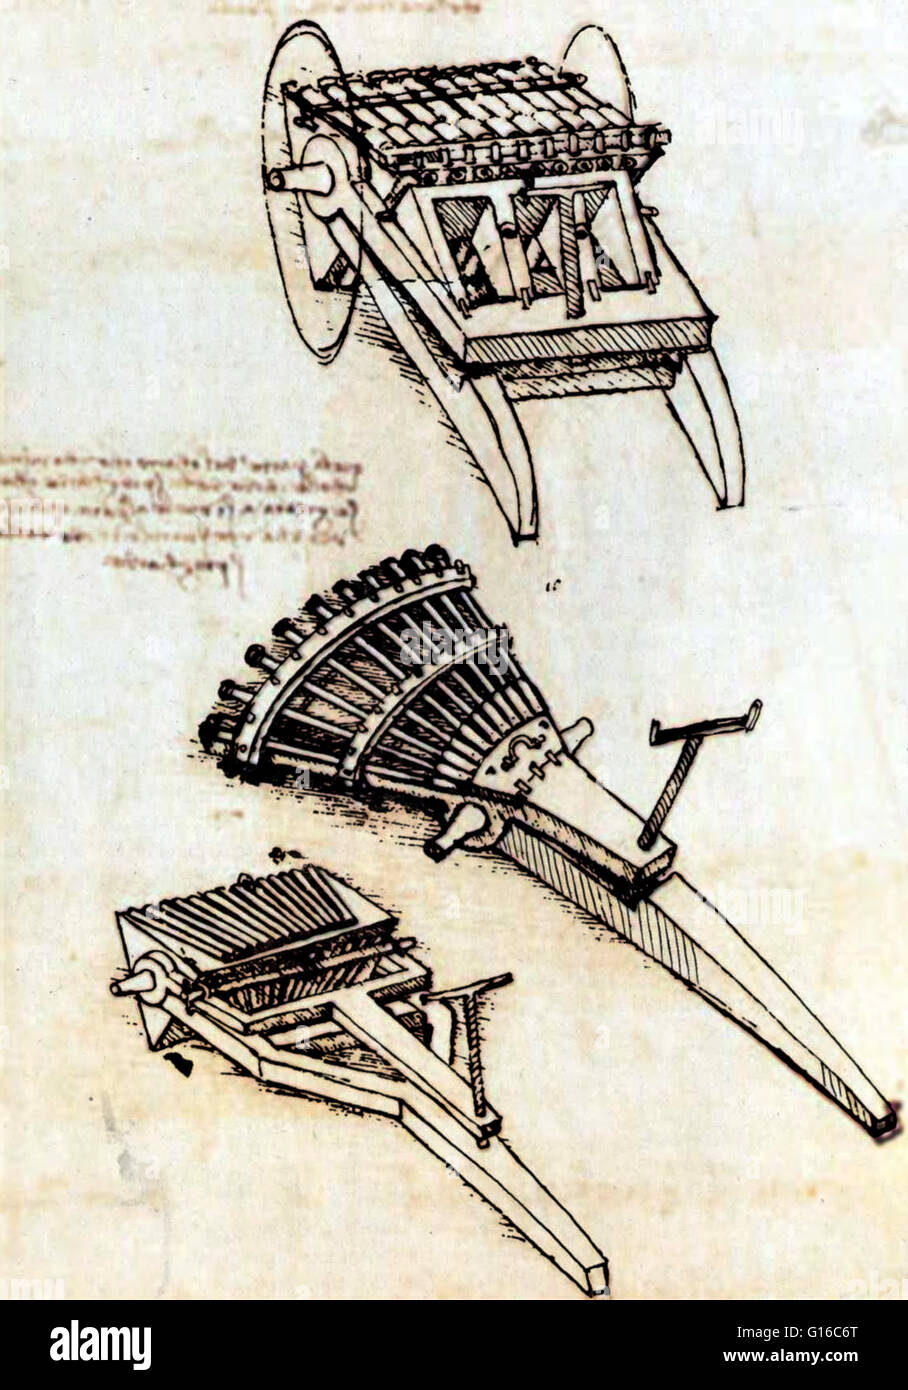 Pistolen mit Array horizontale Fässer und Pistole mit drei Racks der Fässer, um 1481. Schusswaffen in Renaissance Zeiten waren ungenau und litt unter einer langsamen Rate des Feuers. Leonardo, in seinem Entwurf für eine Multi-barreled Kanone von 1481, gesucht, zur Überwindung der Stockfoto